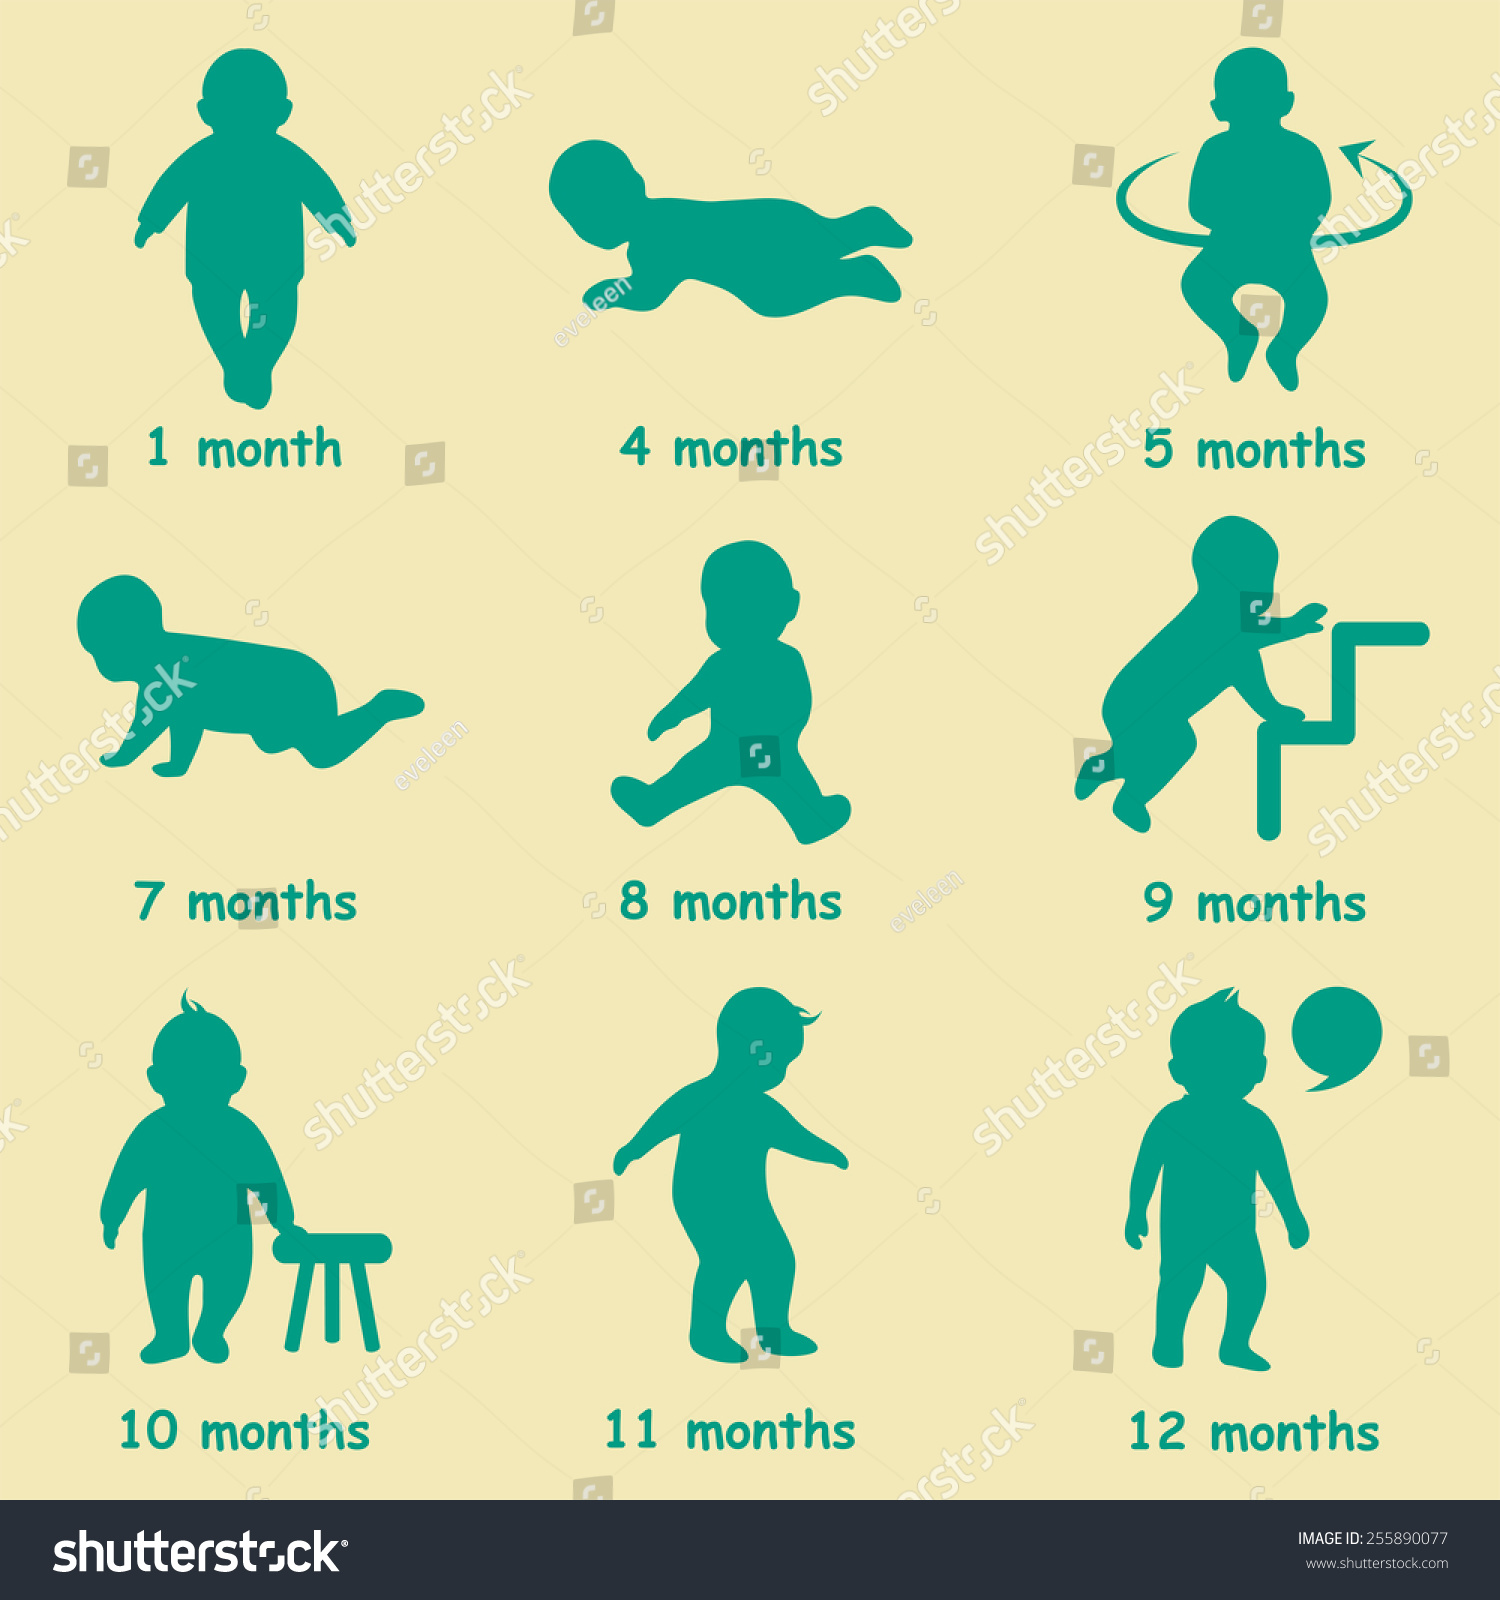 婴儿发展图标,儿童生长阶段,蹒跚学步的里程碑